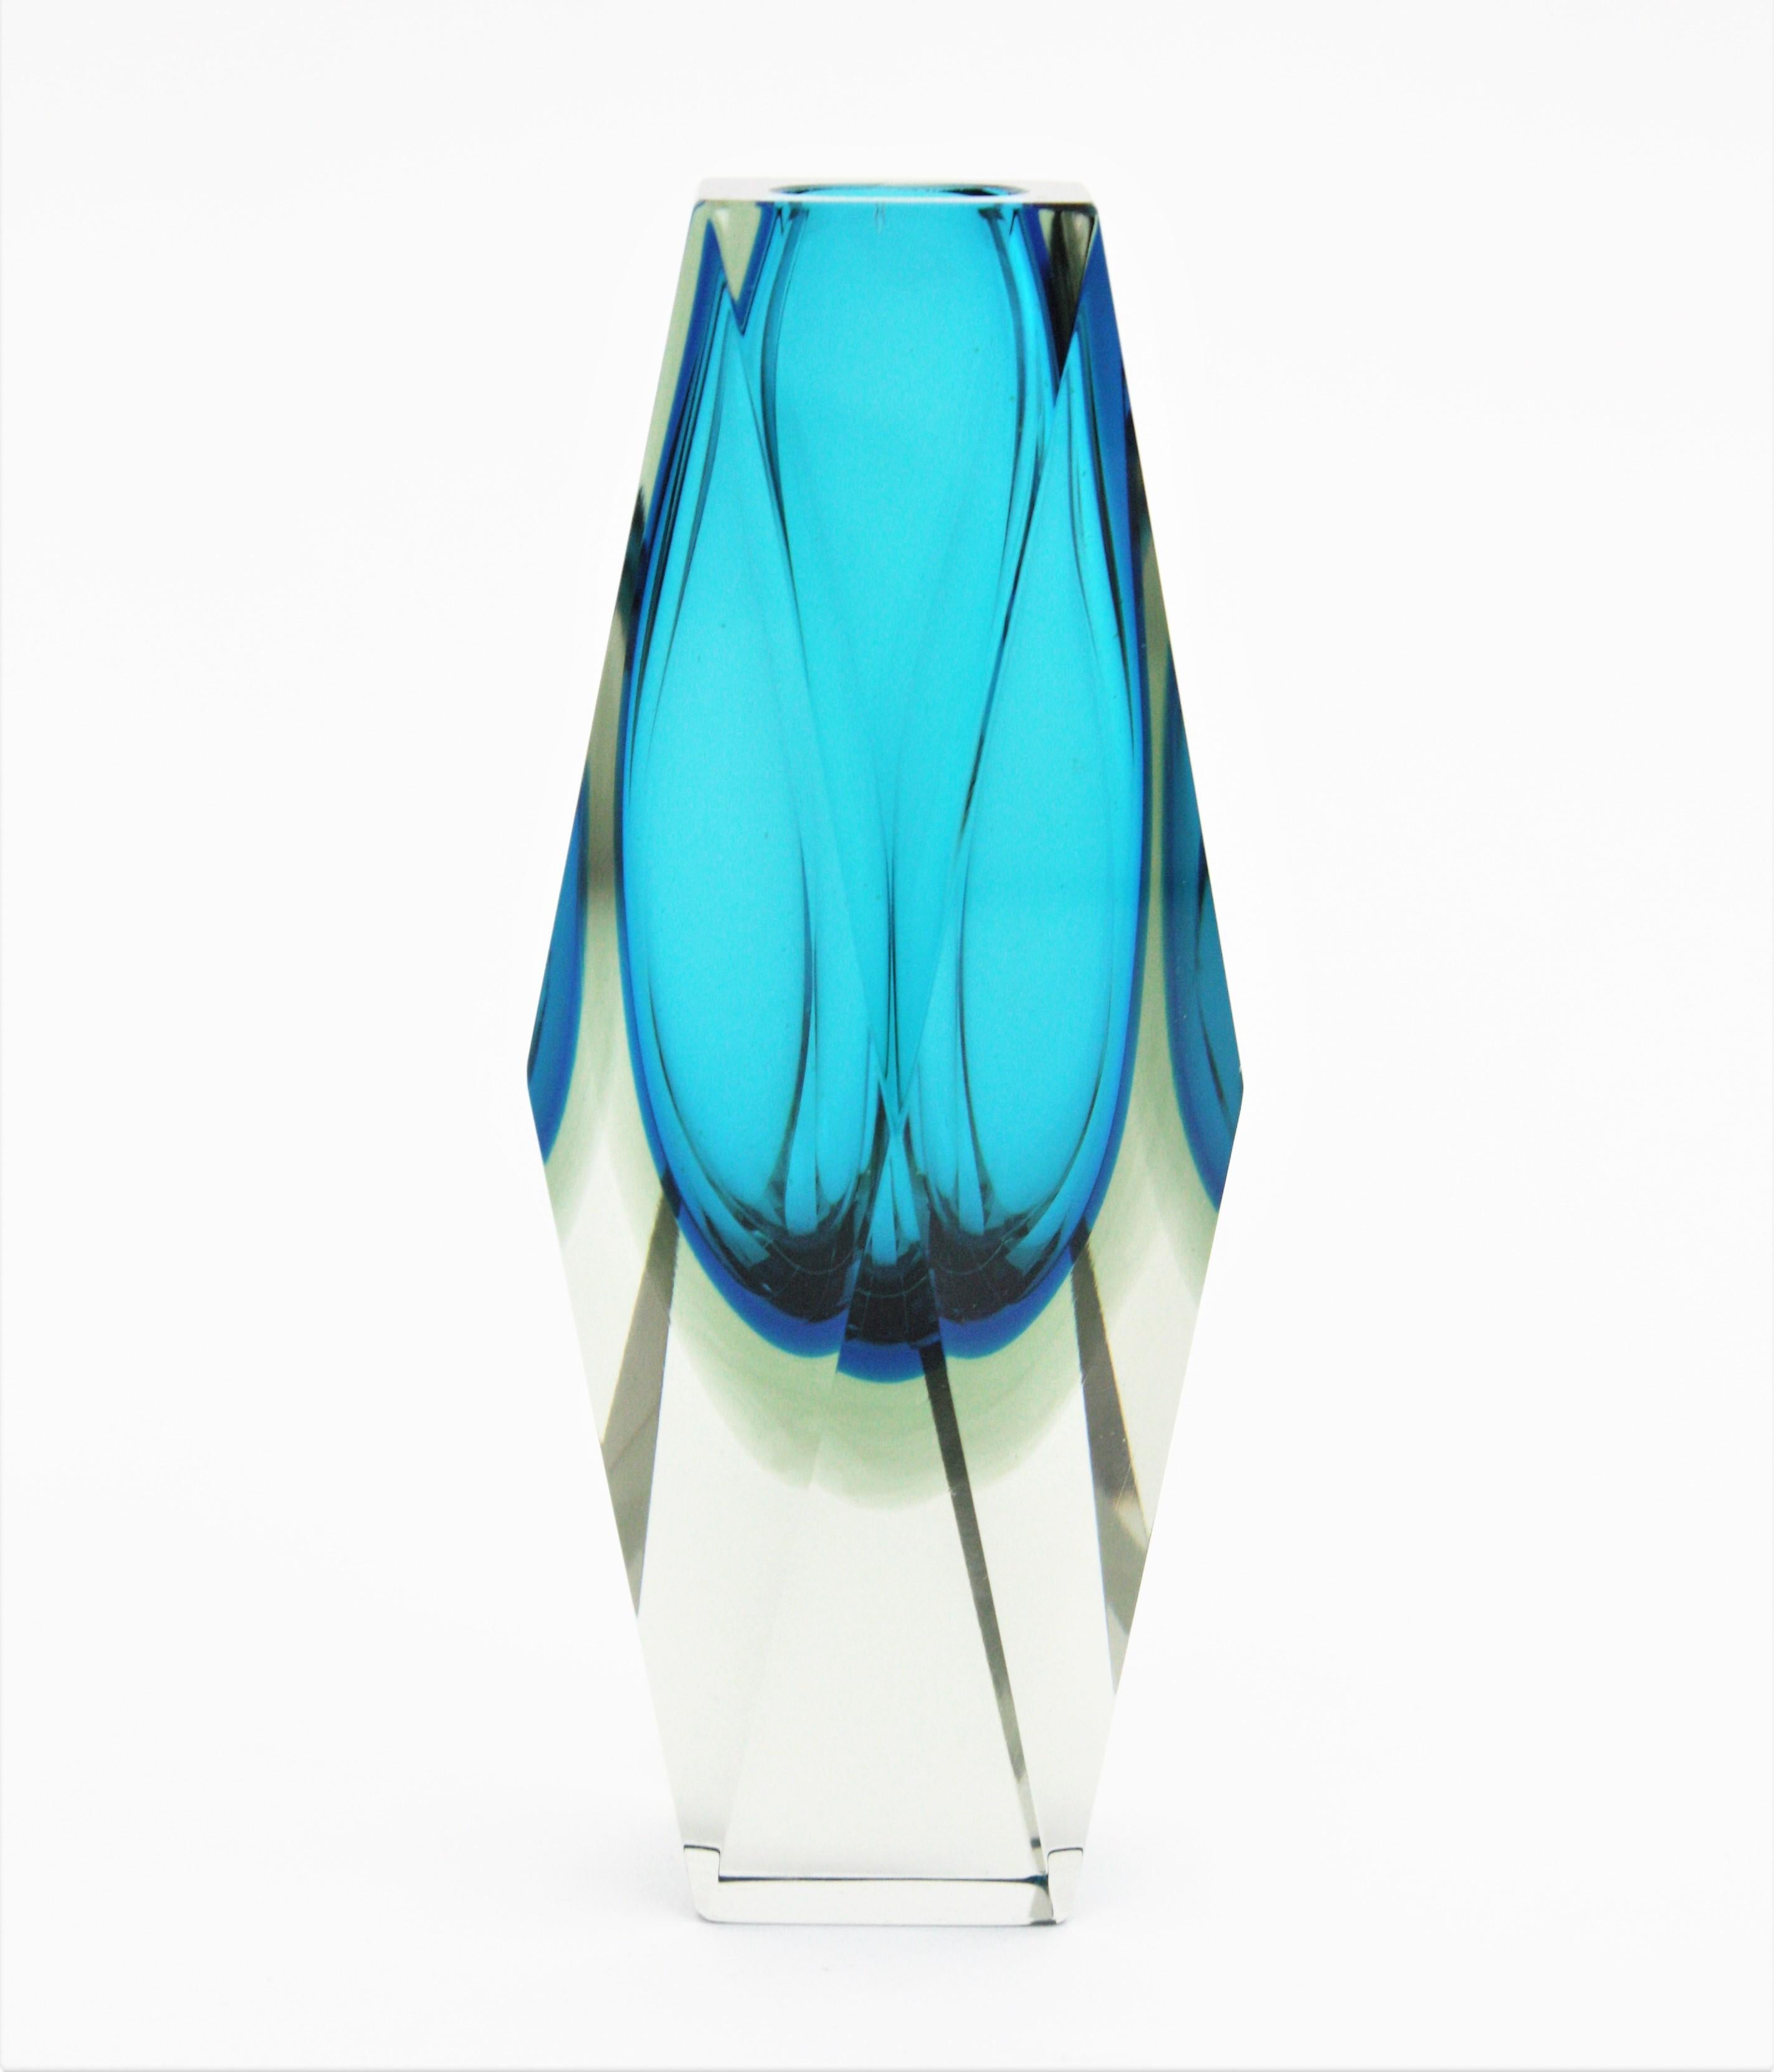 Llamativo jarrón facetado de Murano Glass Sommerso de color azul atribuido a Mandruzzato. Italia, años 60. 
Cristal azul con una capa en azul más oscuro encamisada en cristal transparente. 
Preciosa colocada sola o formando parte de una colección